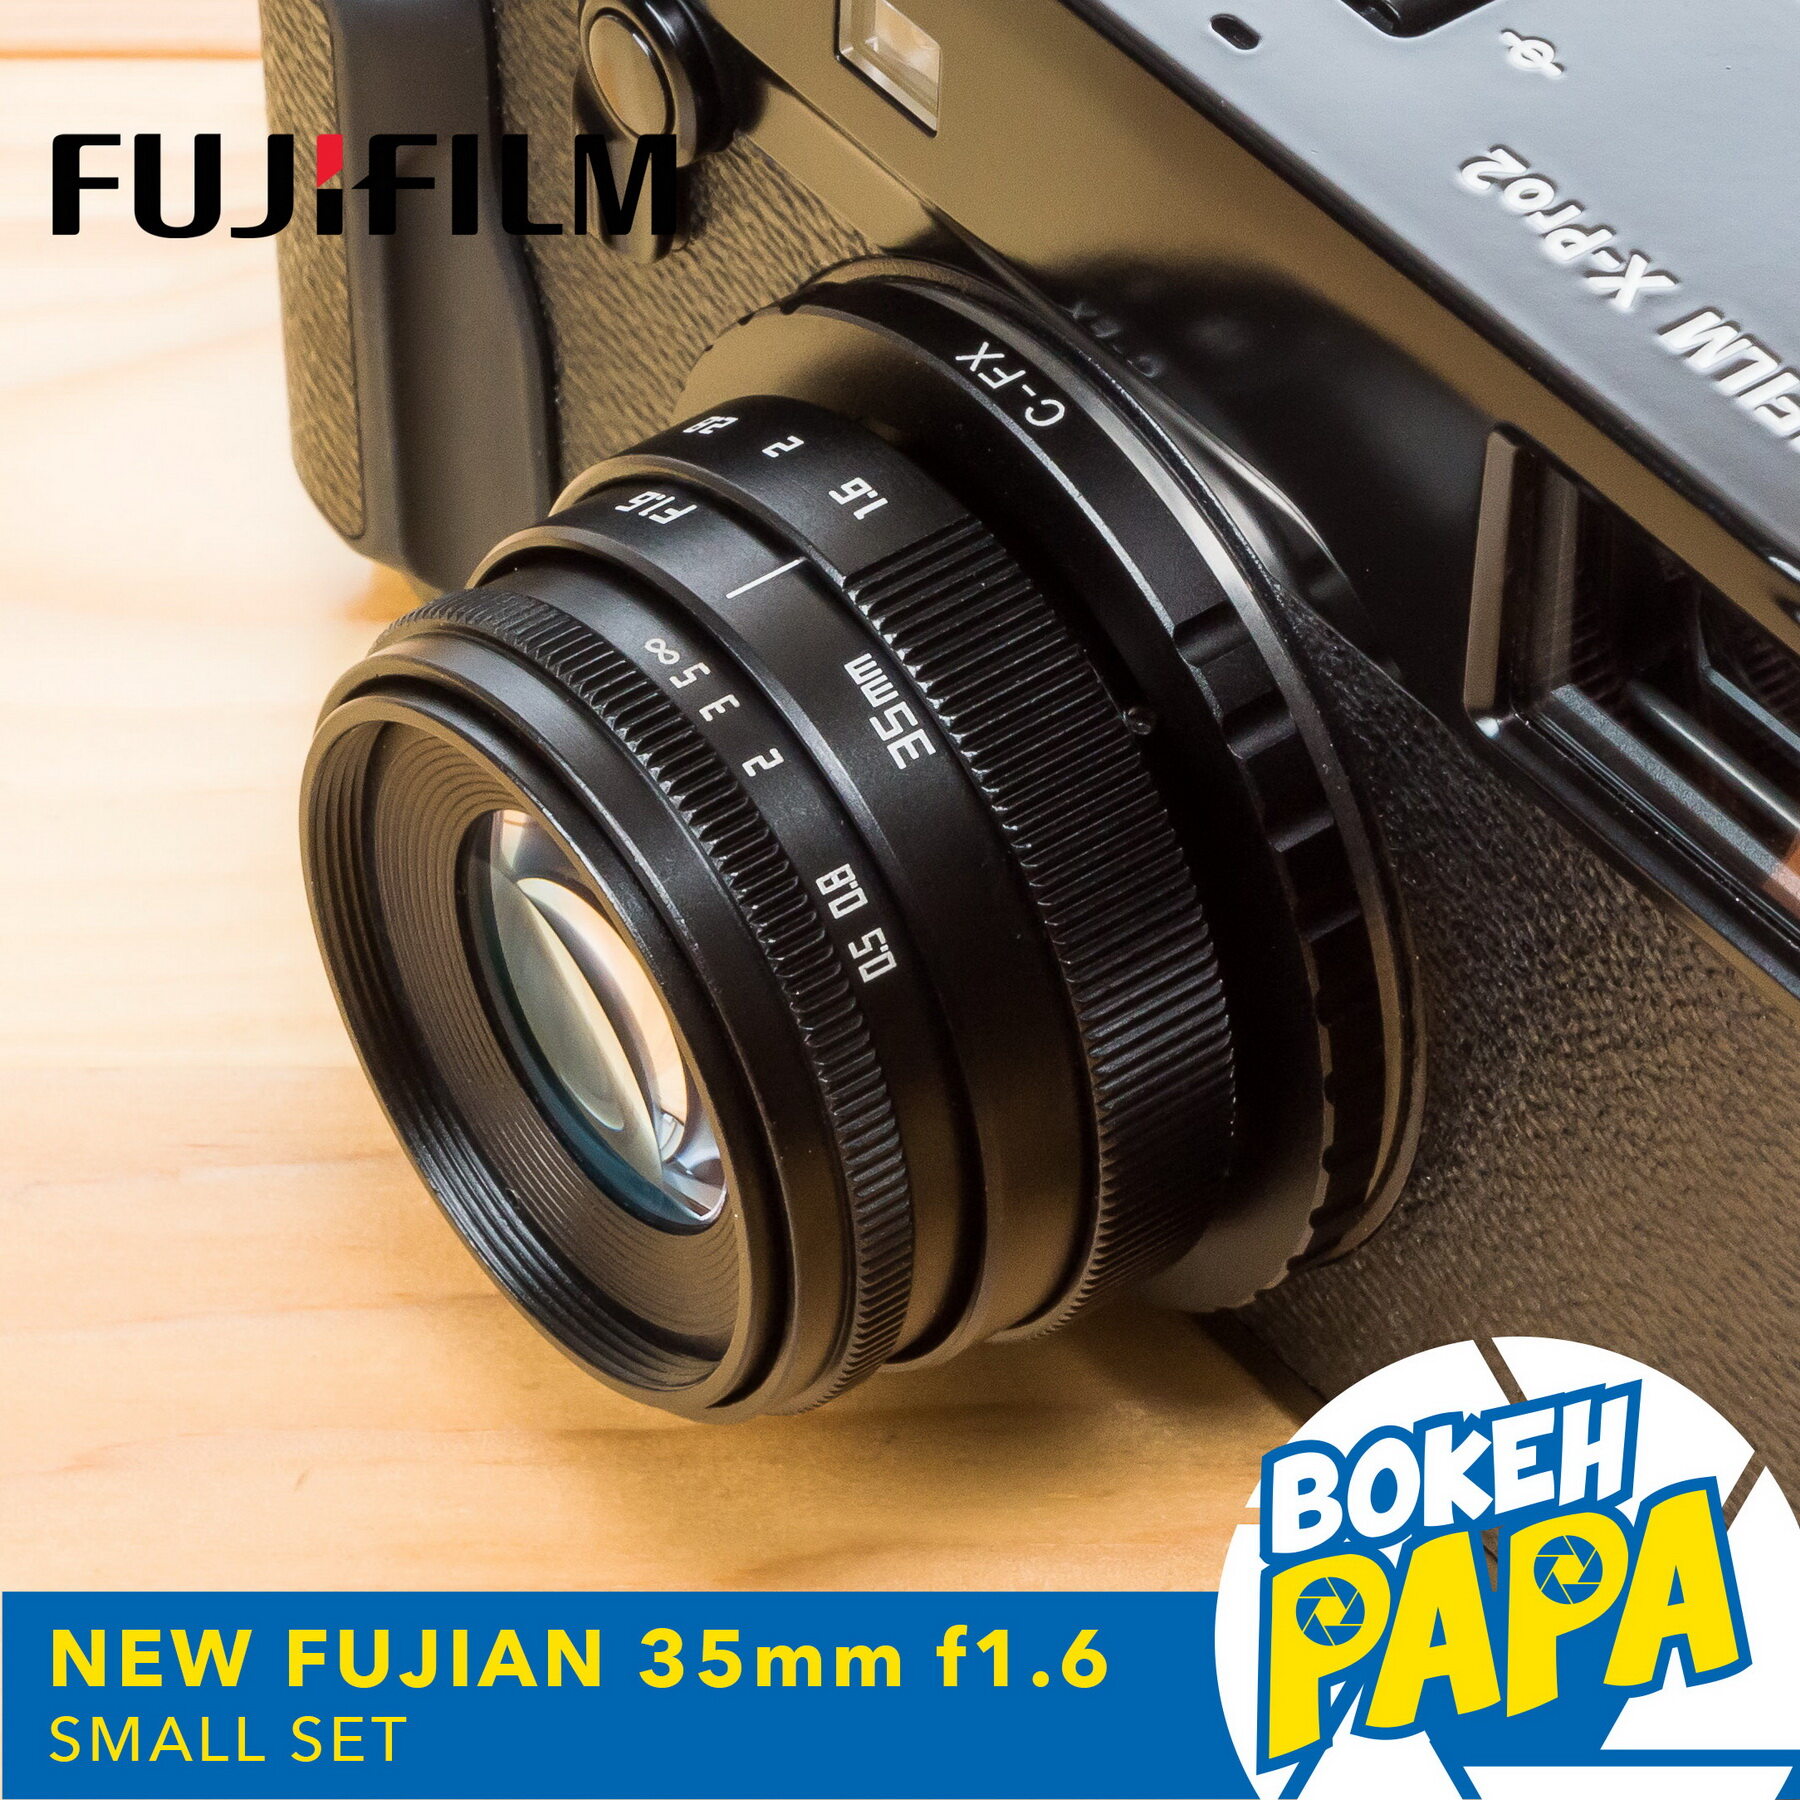 New Fujian 35mm F1.6 เลนส์หน้าชัดหลังเบลอ สำหรับใส่กล้อง Fuji Mirrorless ได้ทุกรุ่น ( เลนส์มือหมุน ). 